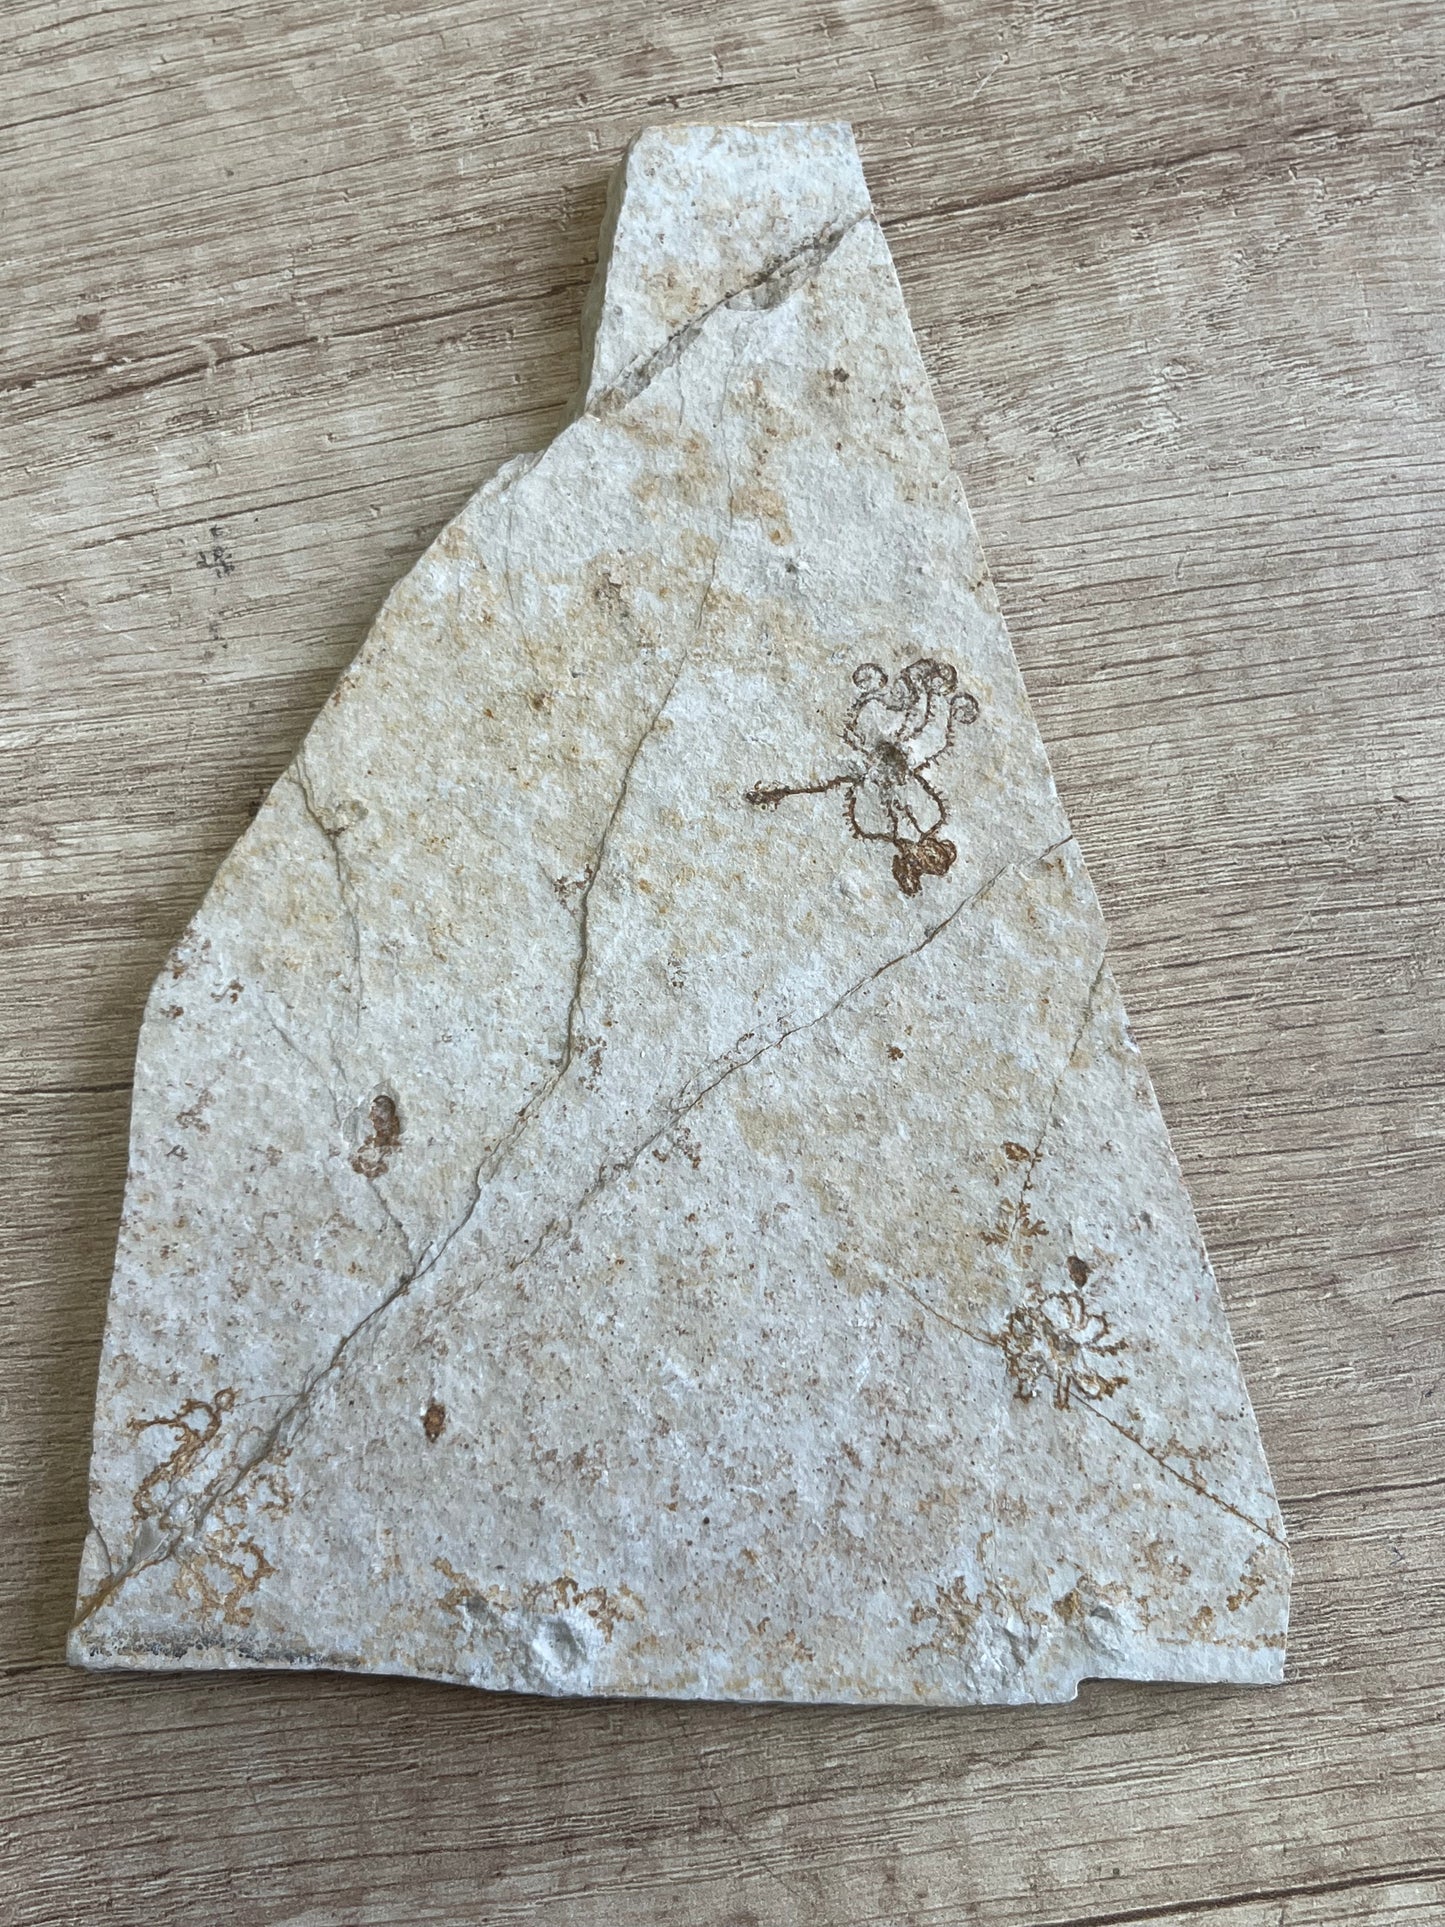 криноид Saccocoma Pectinata ископаемое Зонхофенский известняк Германия